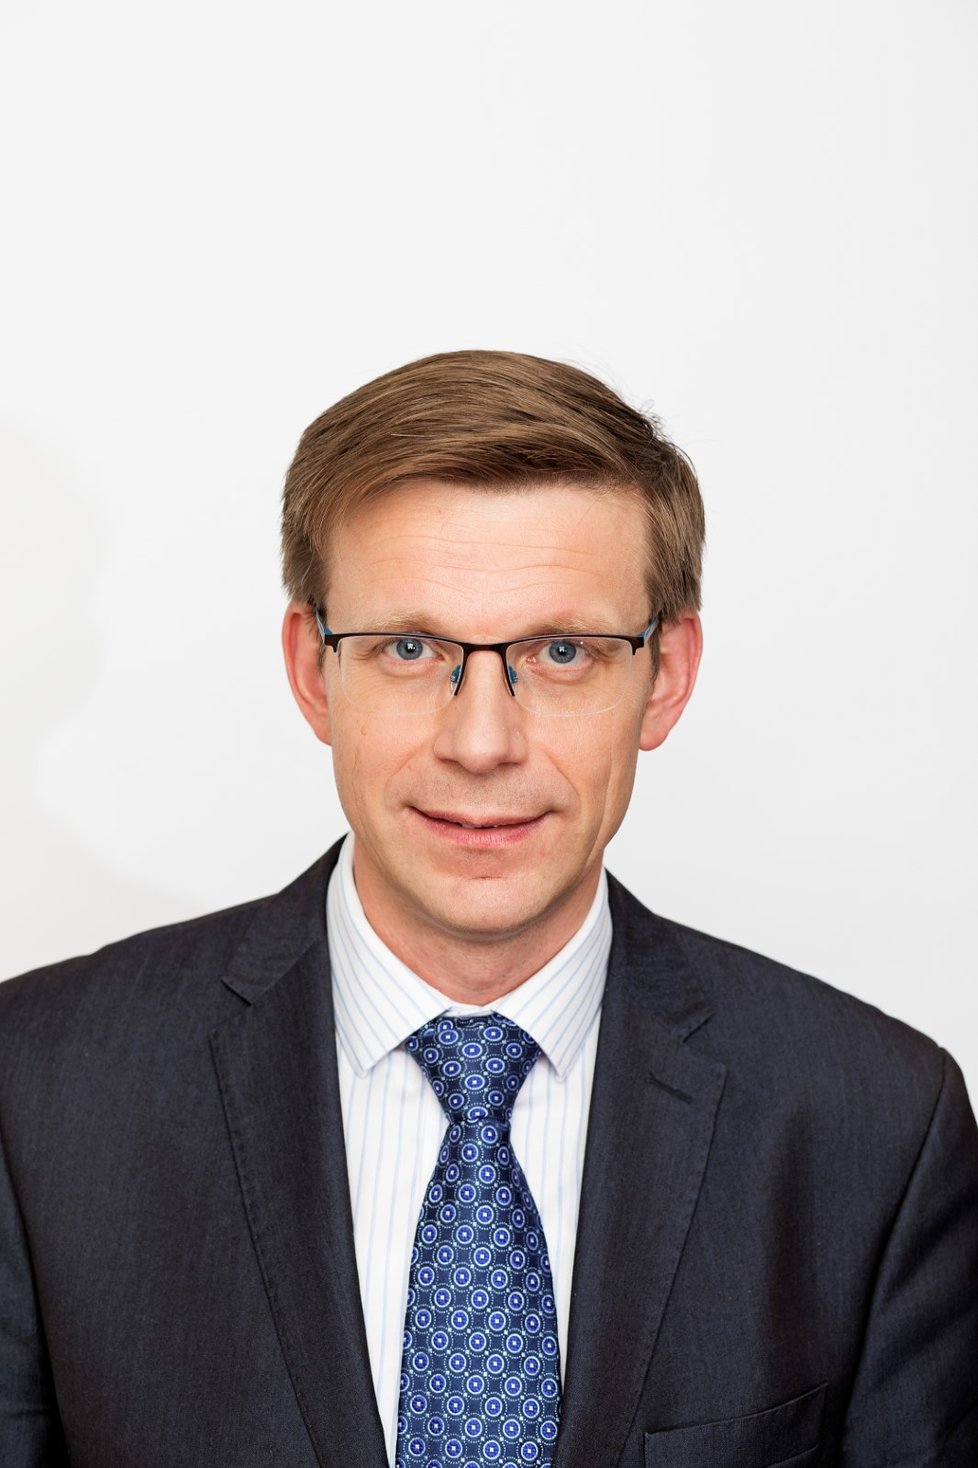 Poslanec Martin Kupka (ODS) byl zvolen 9. 10. 2021